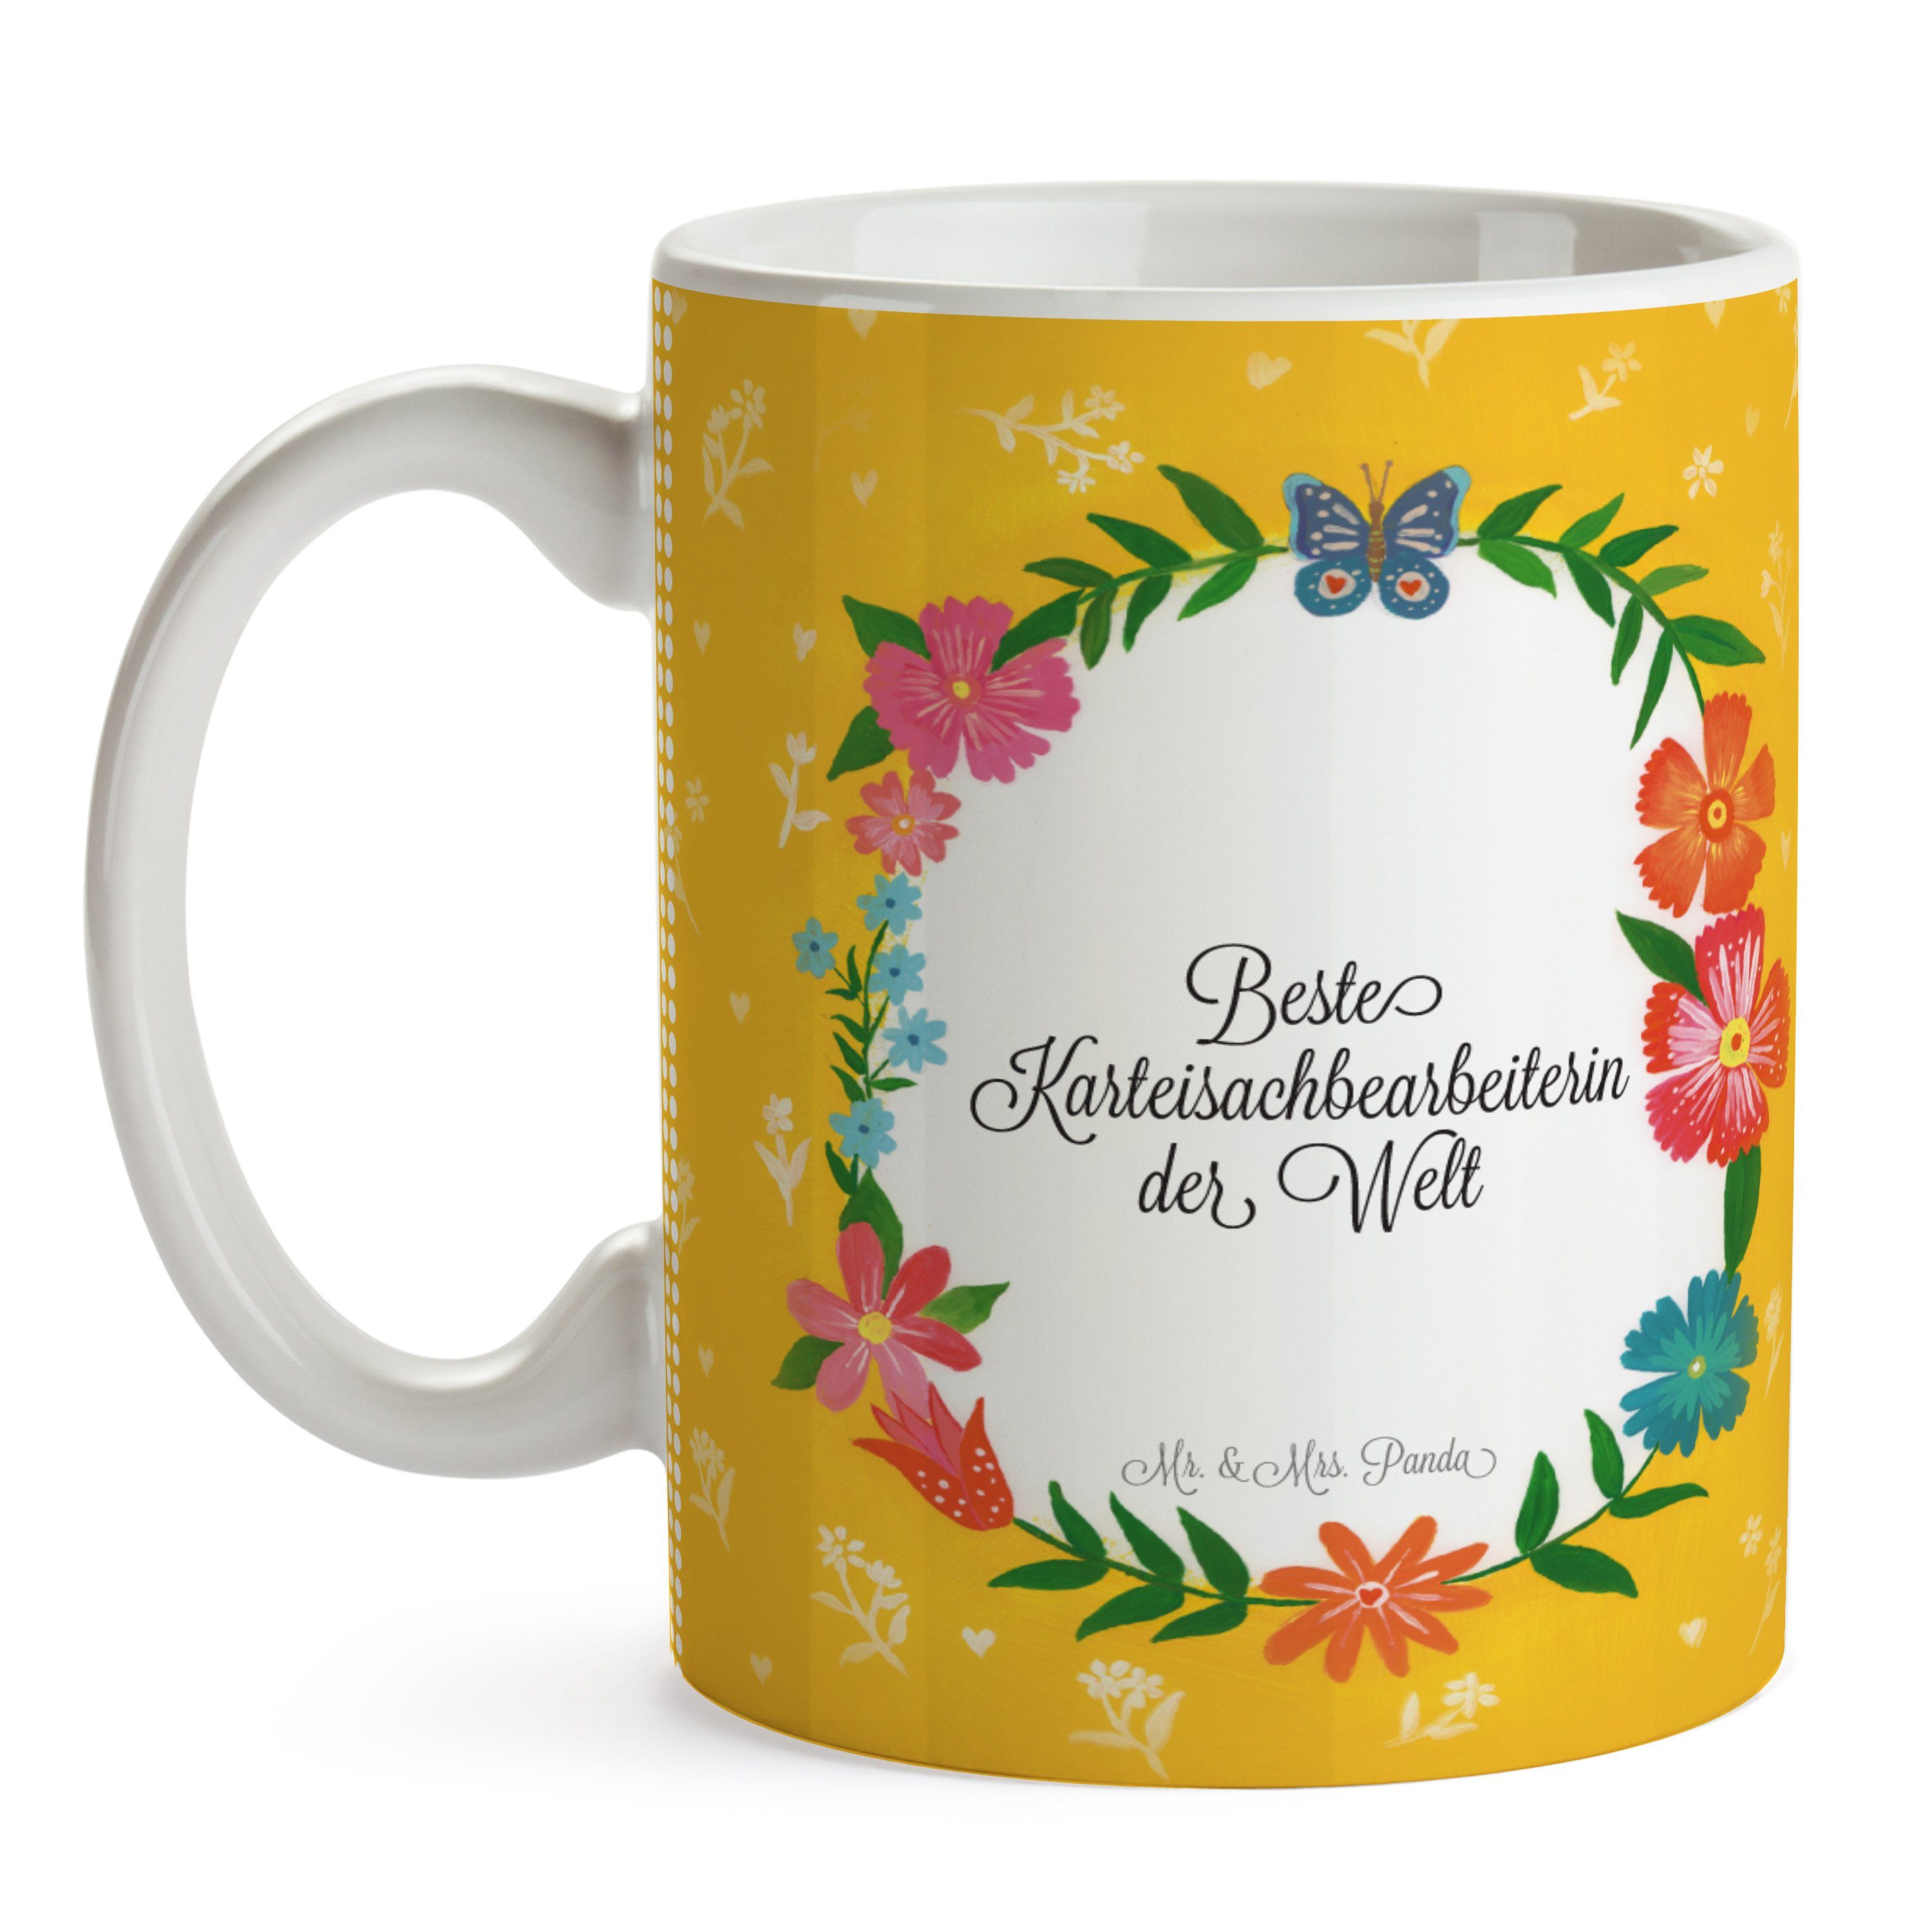 Geschenk, Mrs. Abschied, Teetasse, Keramik & Karteisachbearbeiterin Tasse Tasse Mr. Panda Sprüche, -